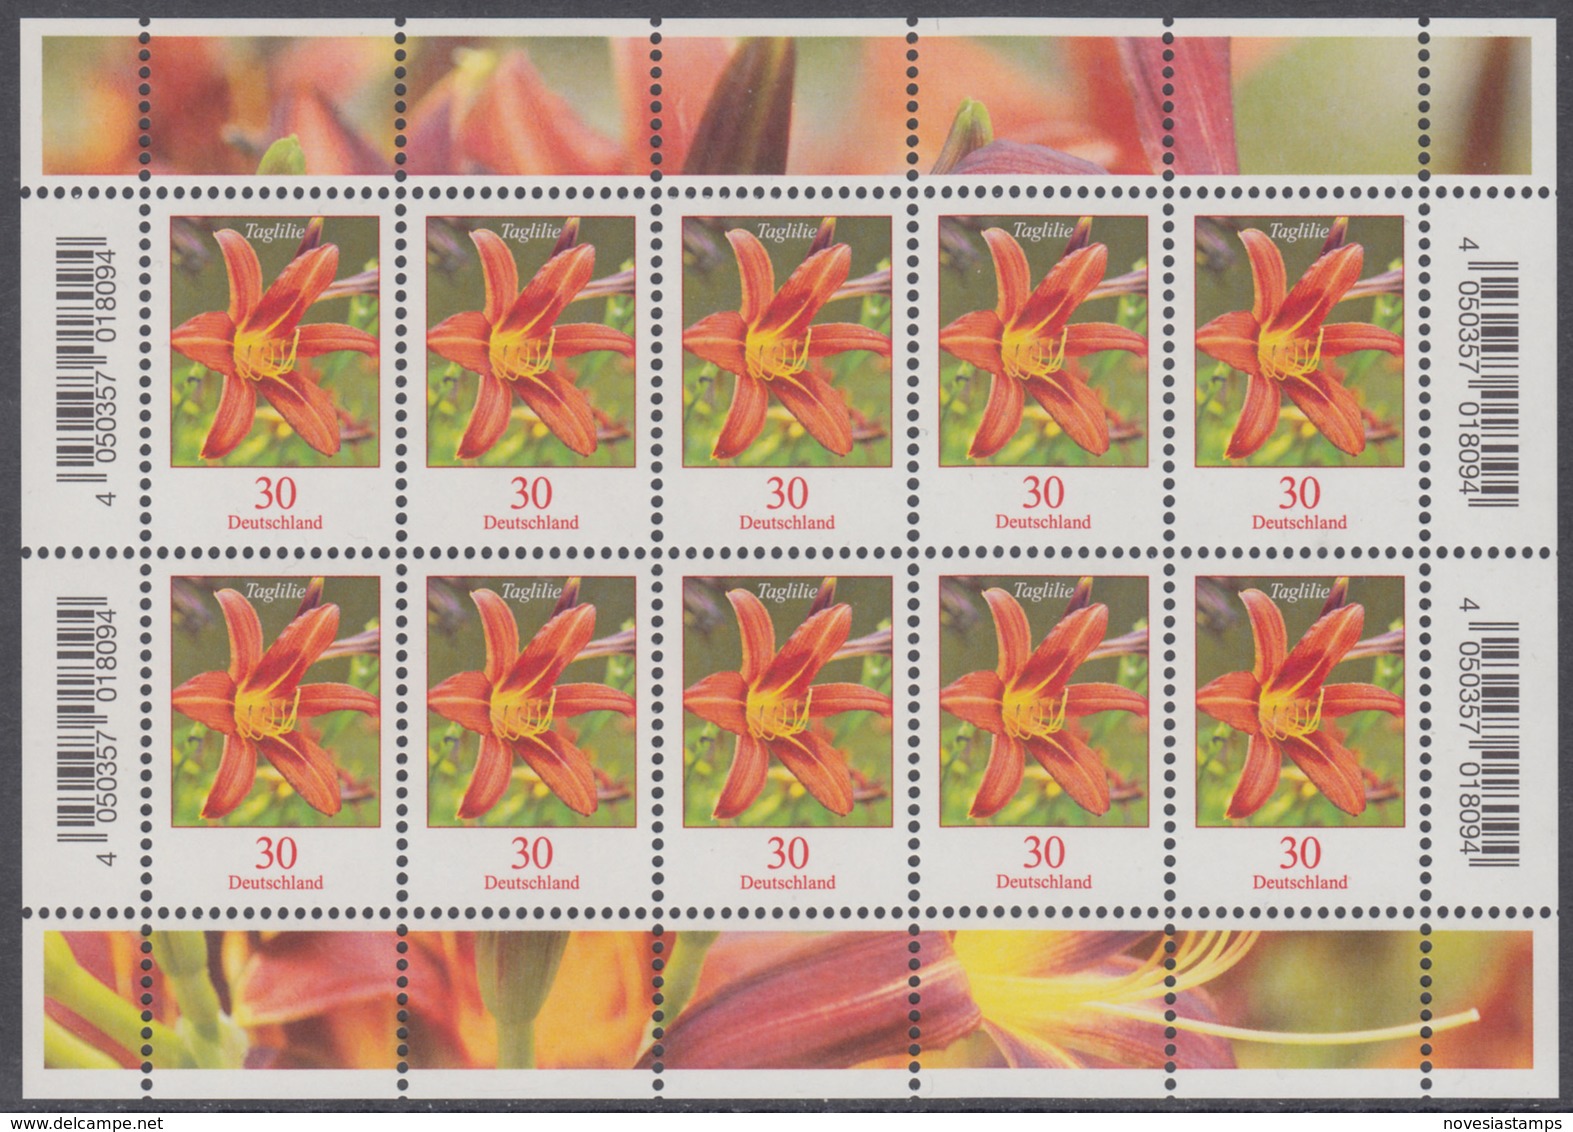 !a! GERMANY 2020 Mi. 3509 MNH SHEET(10) - Flowers: Daylily - Nuevos